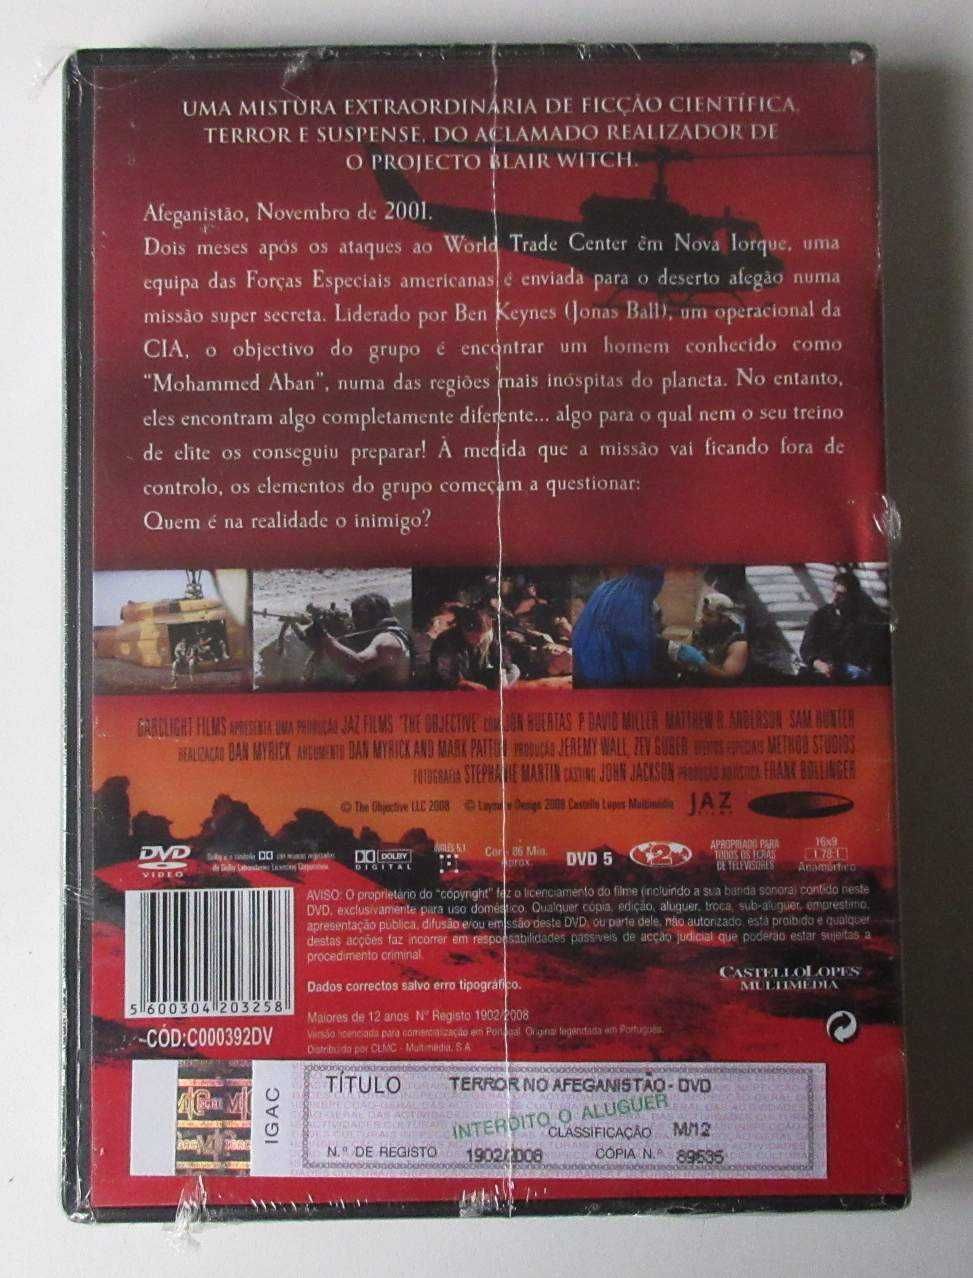 Terror no Afeganistão (DVD Novo / Selado)